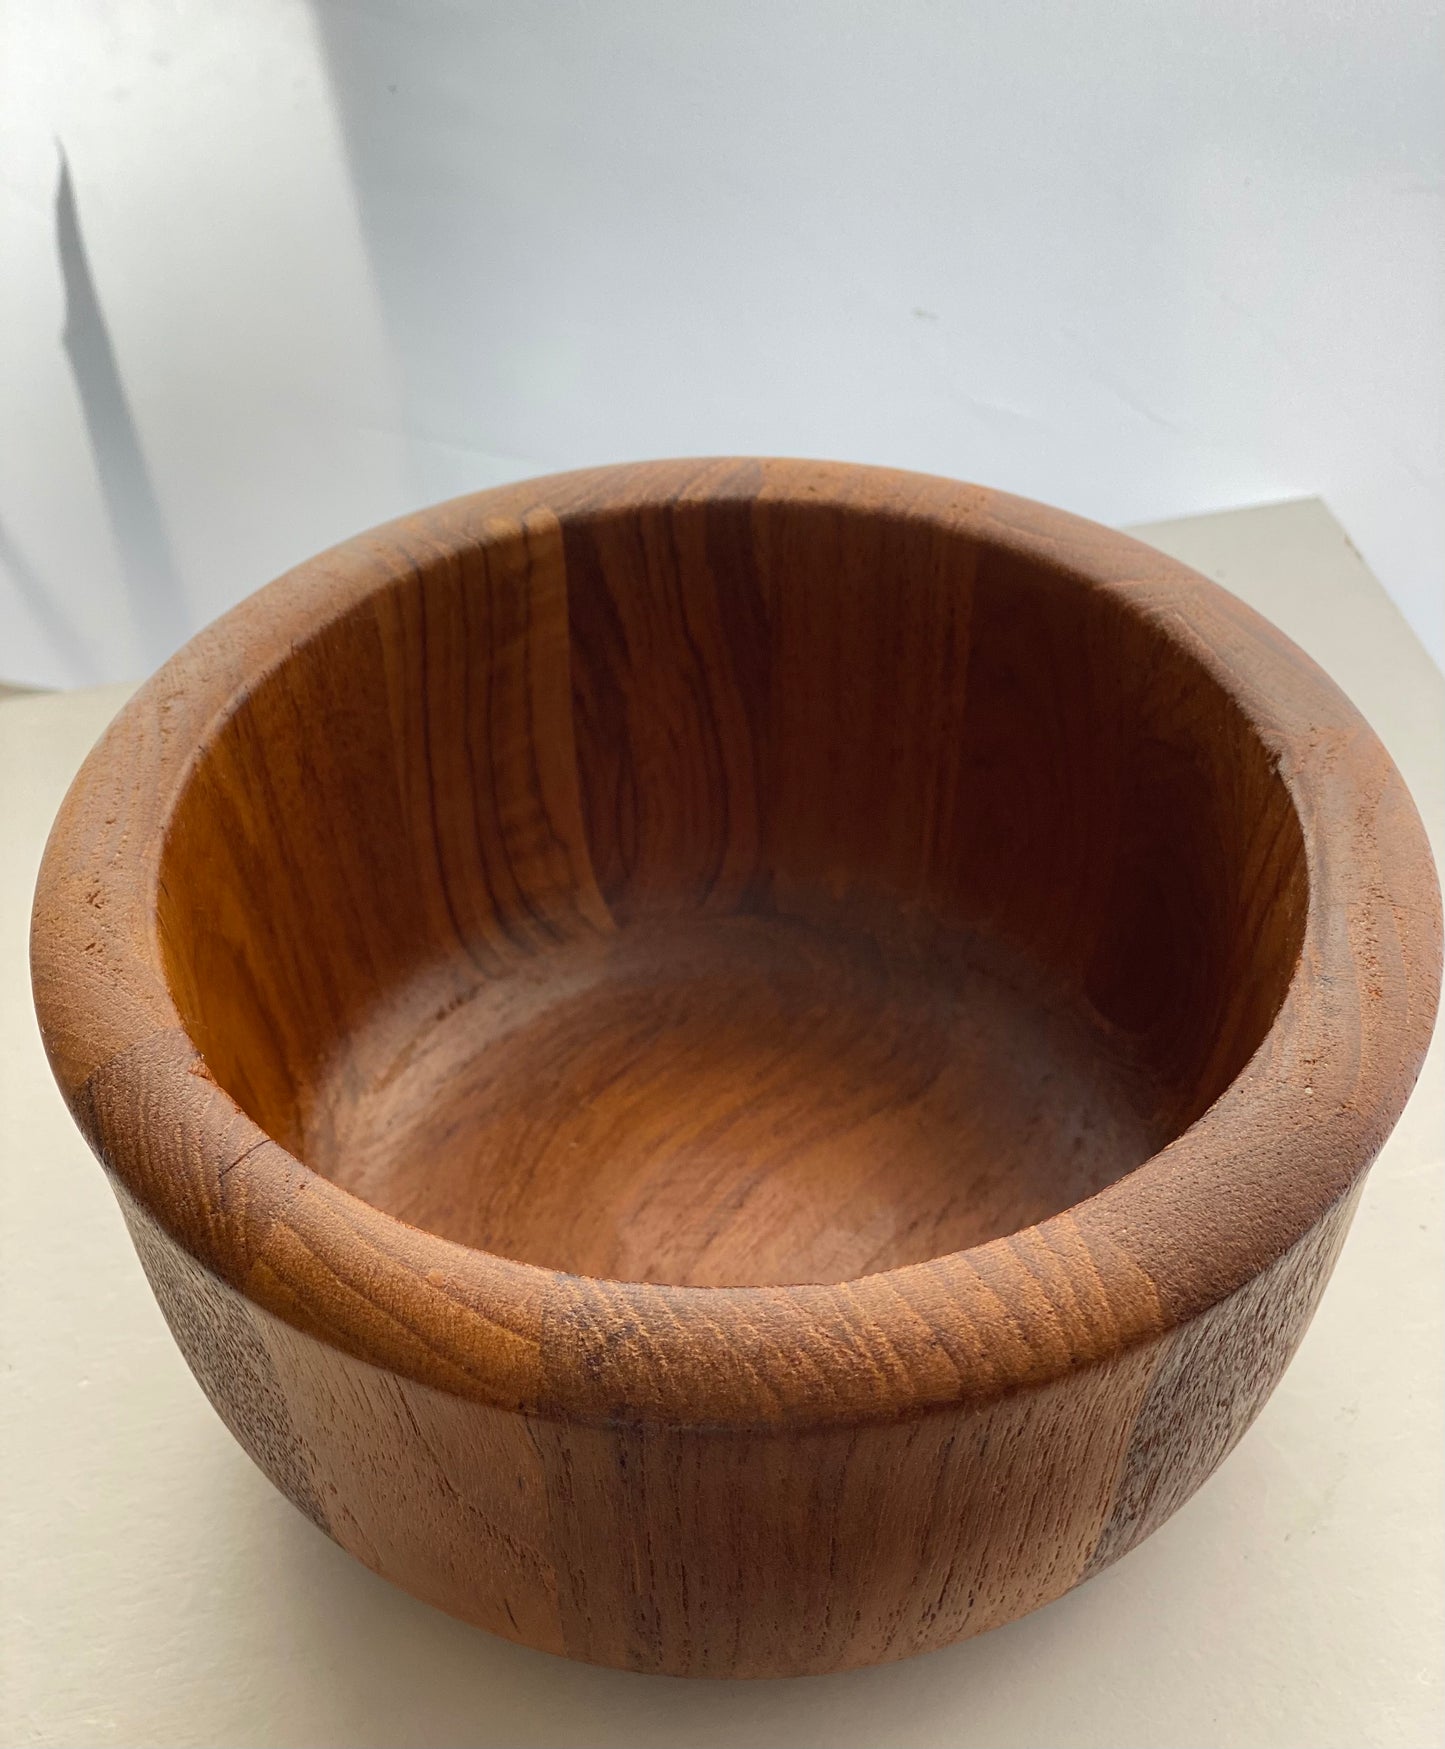 Teak Bowl designed by Jens Harald Quistgaard for Dansk Design in the 1960s